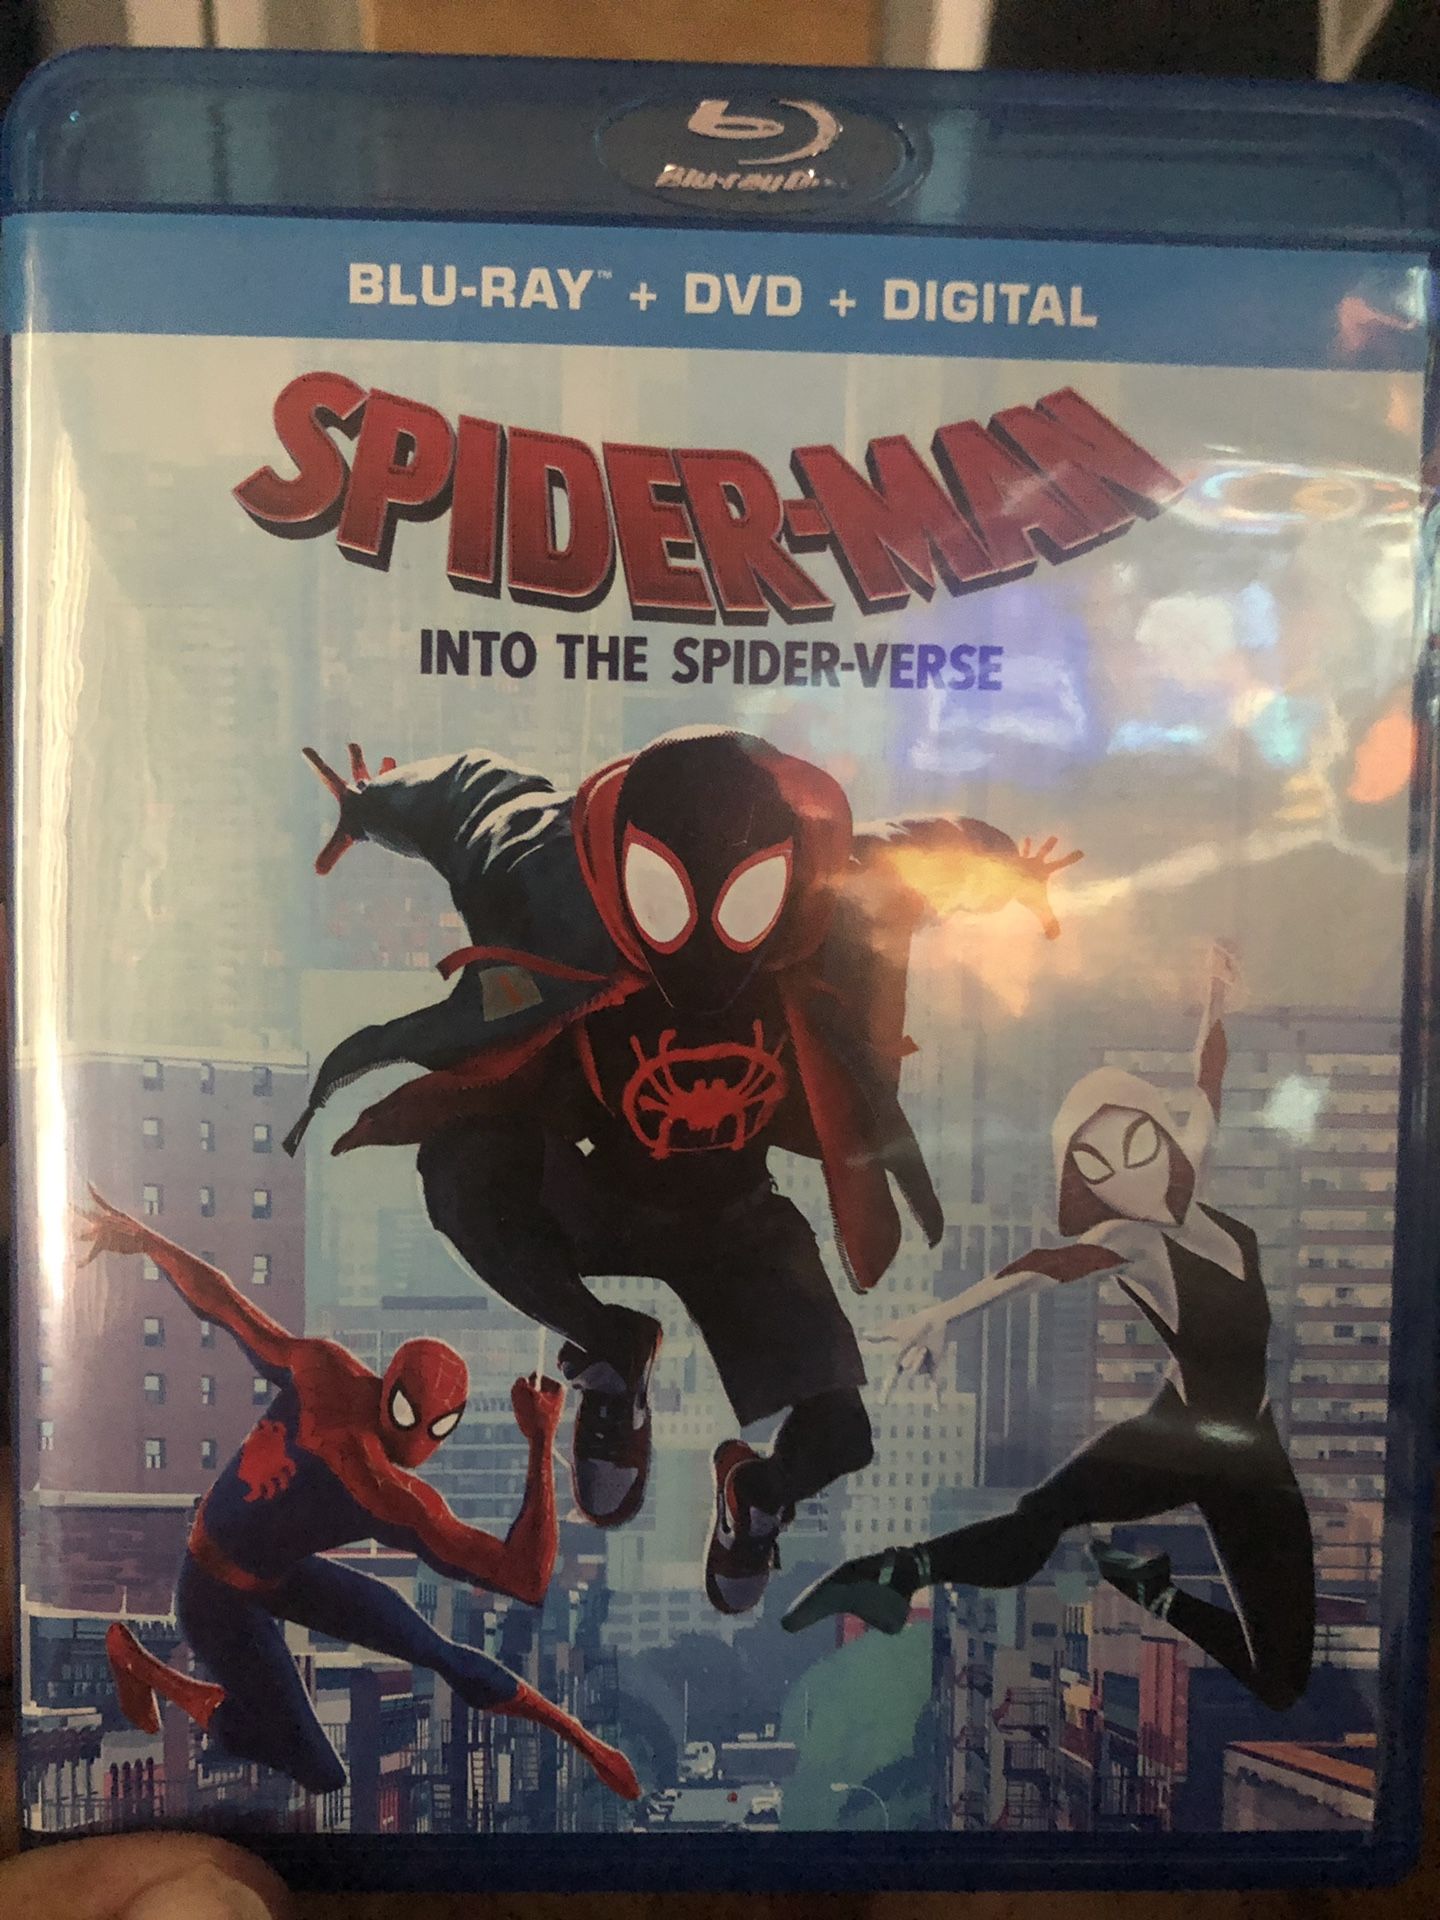 Spider-Man digital code